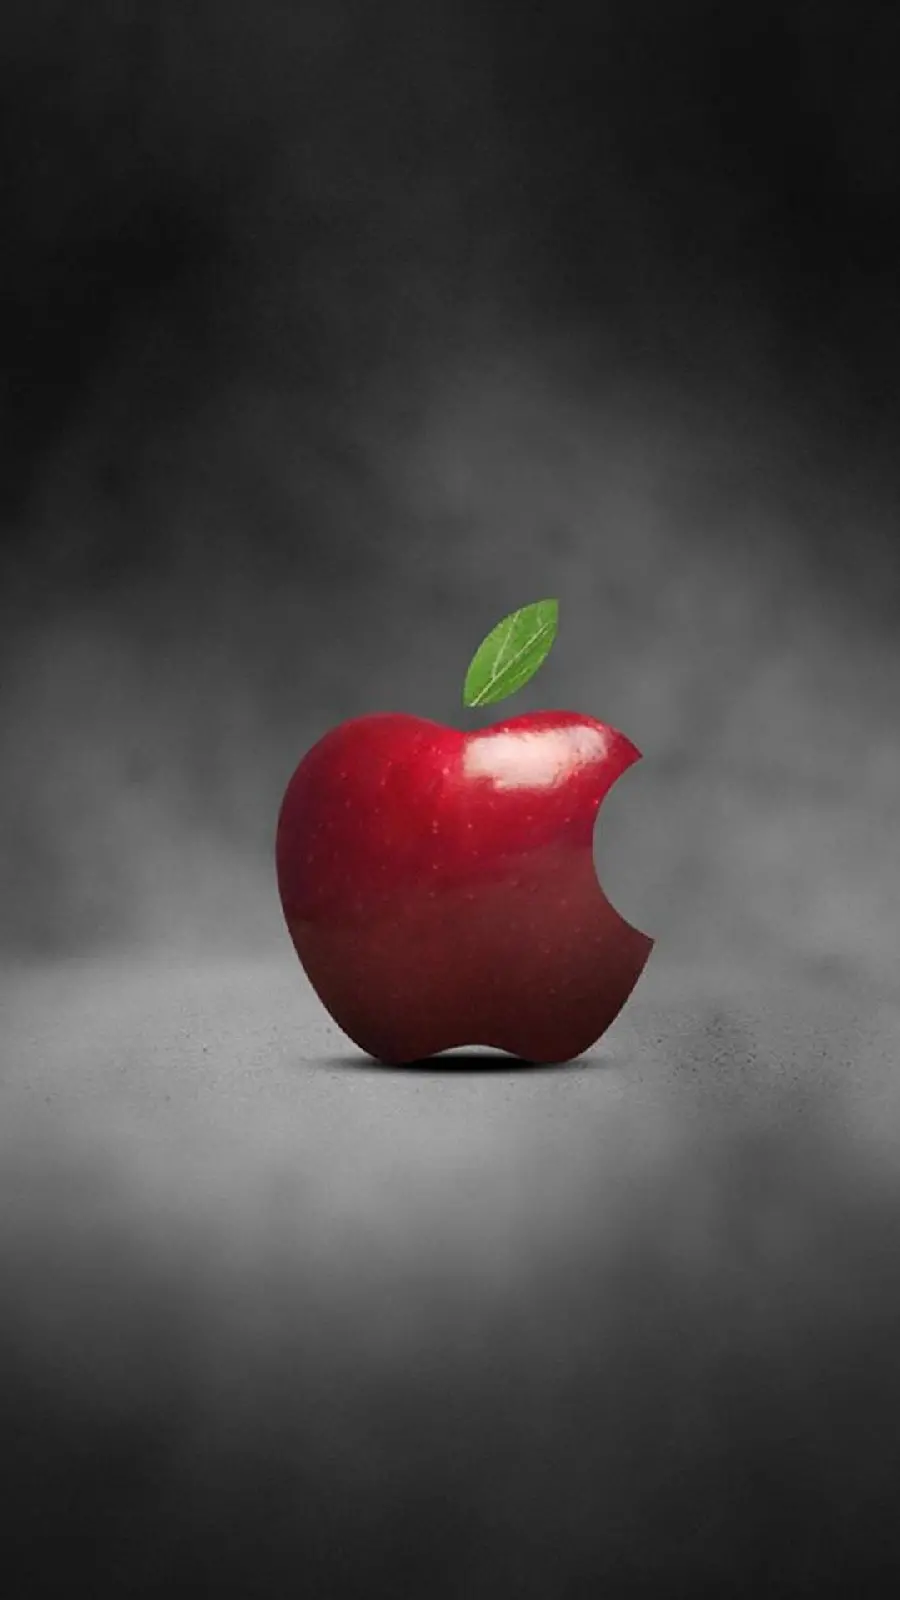 آرم اپل در شکل یک سیب قرمز خوشمزه و گاز زده شده